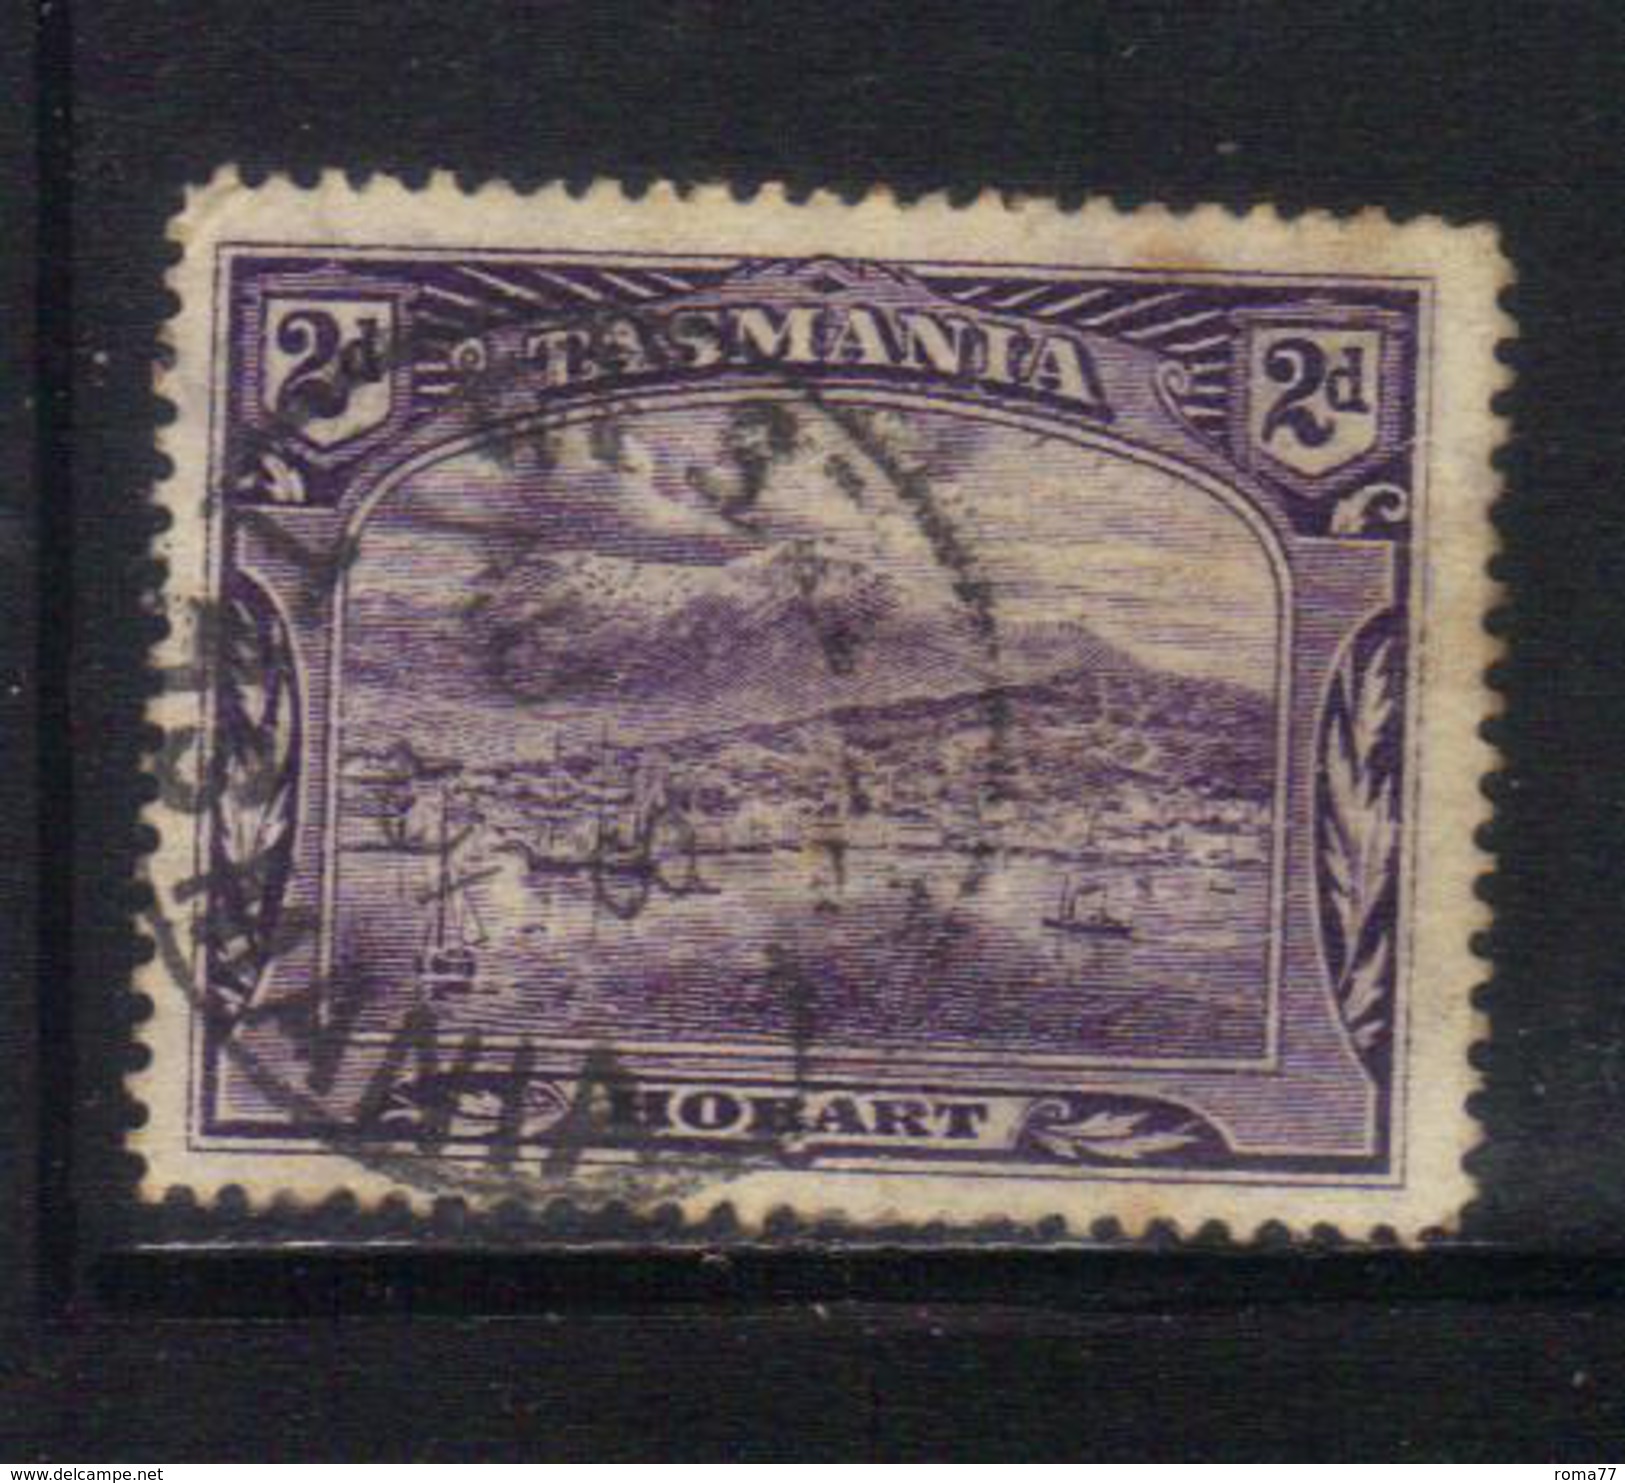 T1907 - TASMANIA 2 Pence Wmk TAS Used - Used Stamps